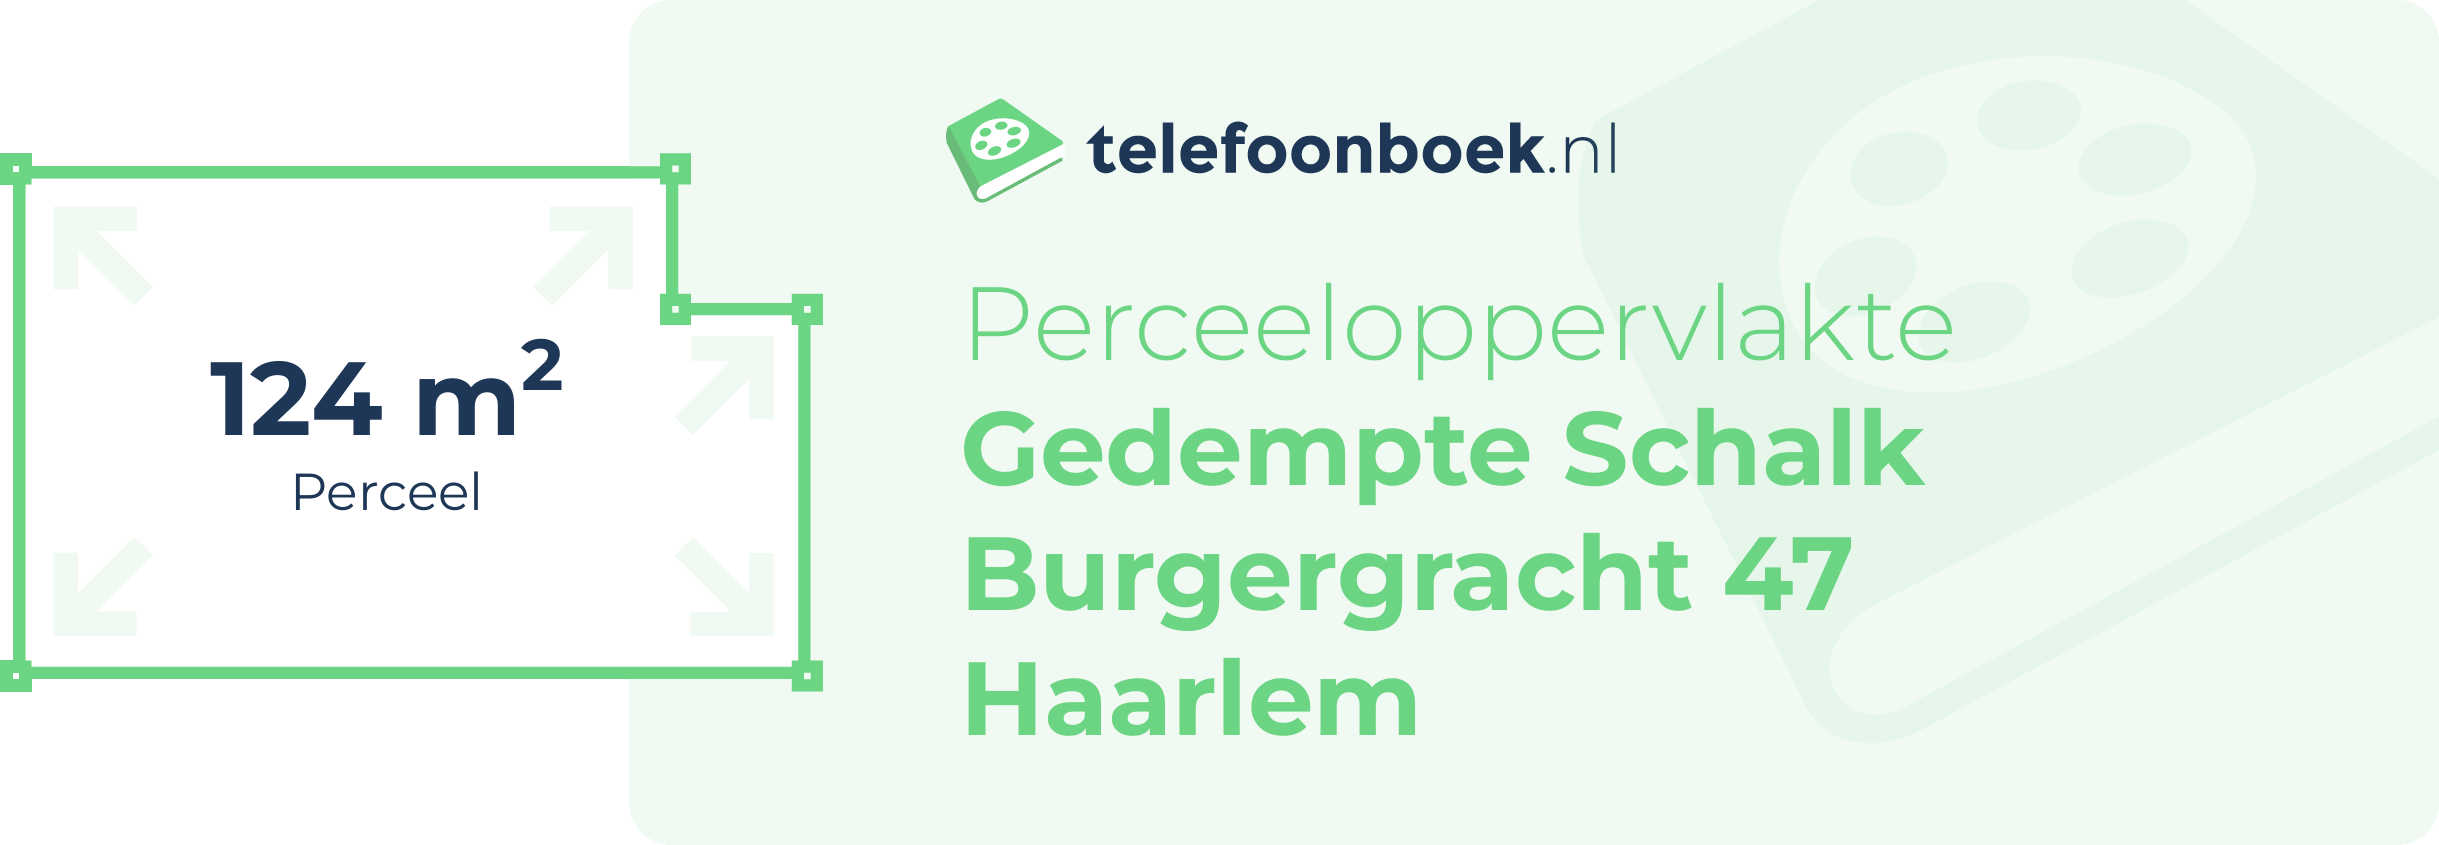 Perceeloppervlakte Gedempte Schalk Burgergracht 47 Haarlem